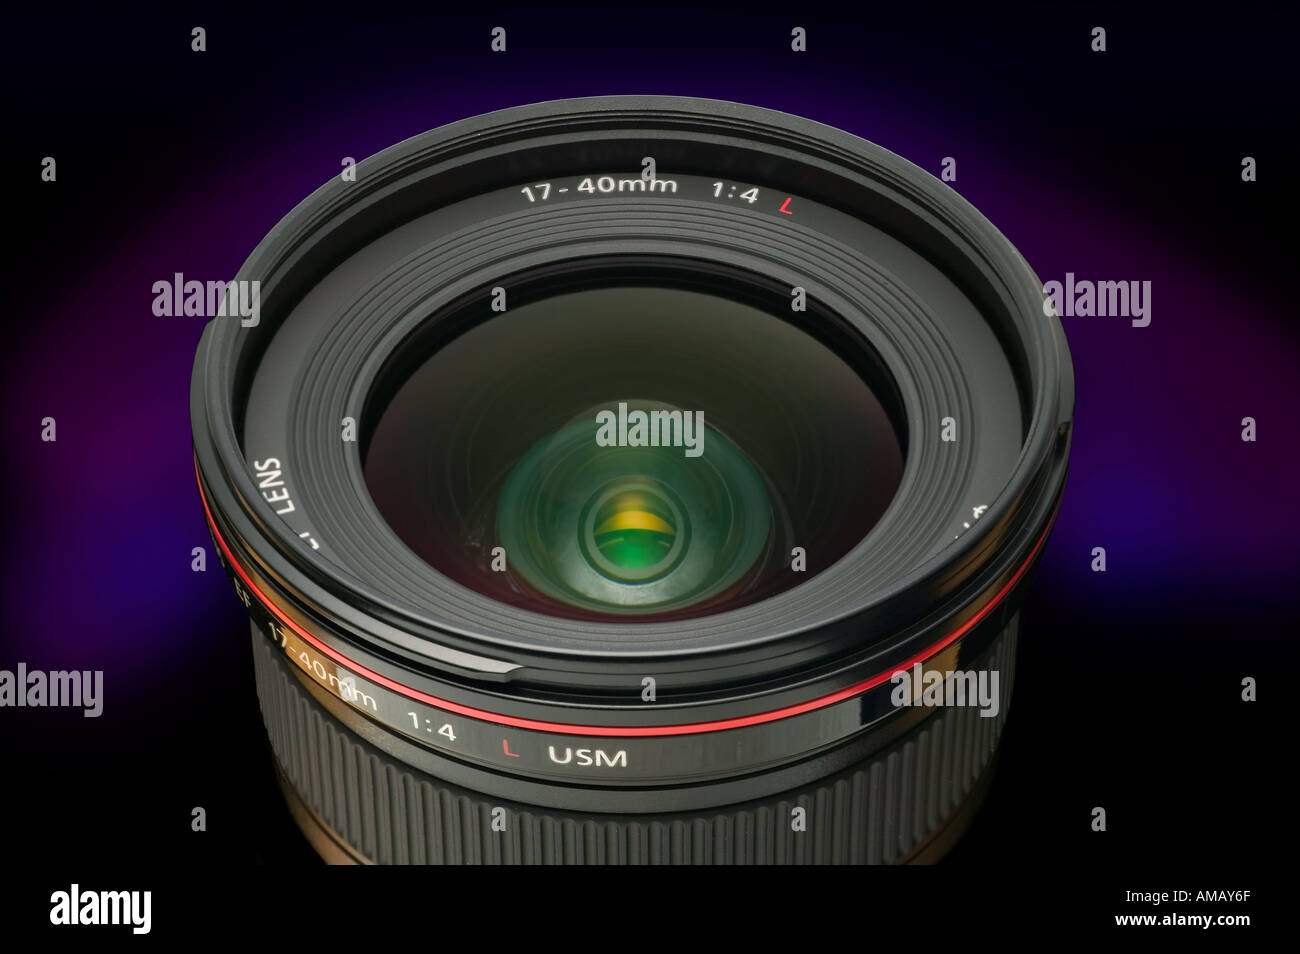 Objectif série L de Canon 17 zoom 40 mm détail de l'élément d'objectif avant Banque D'Images